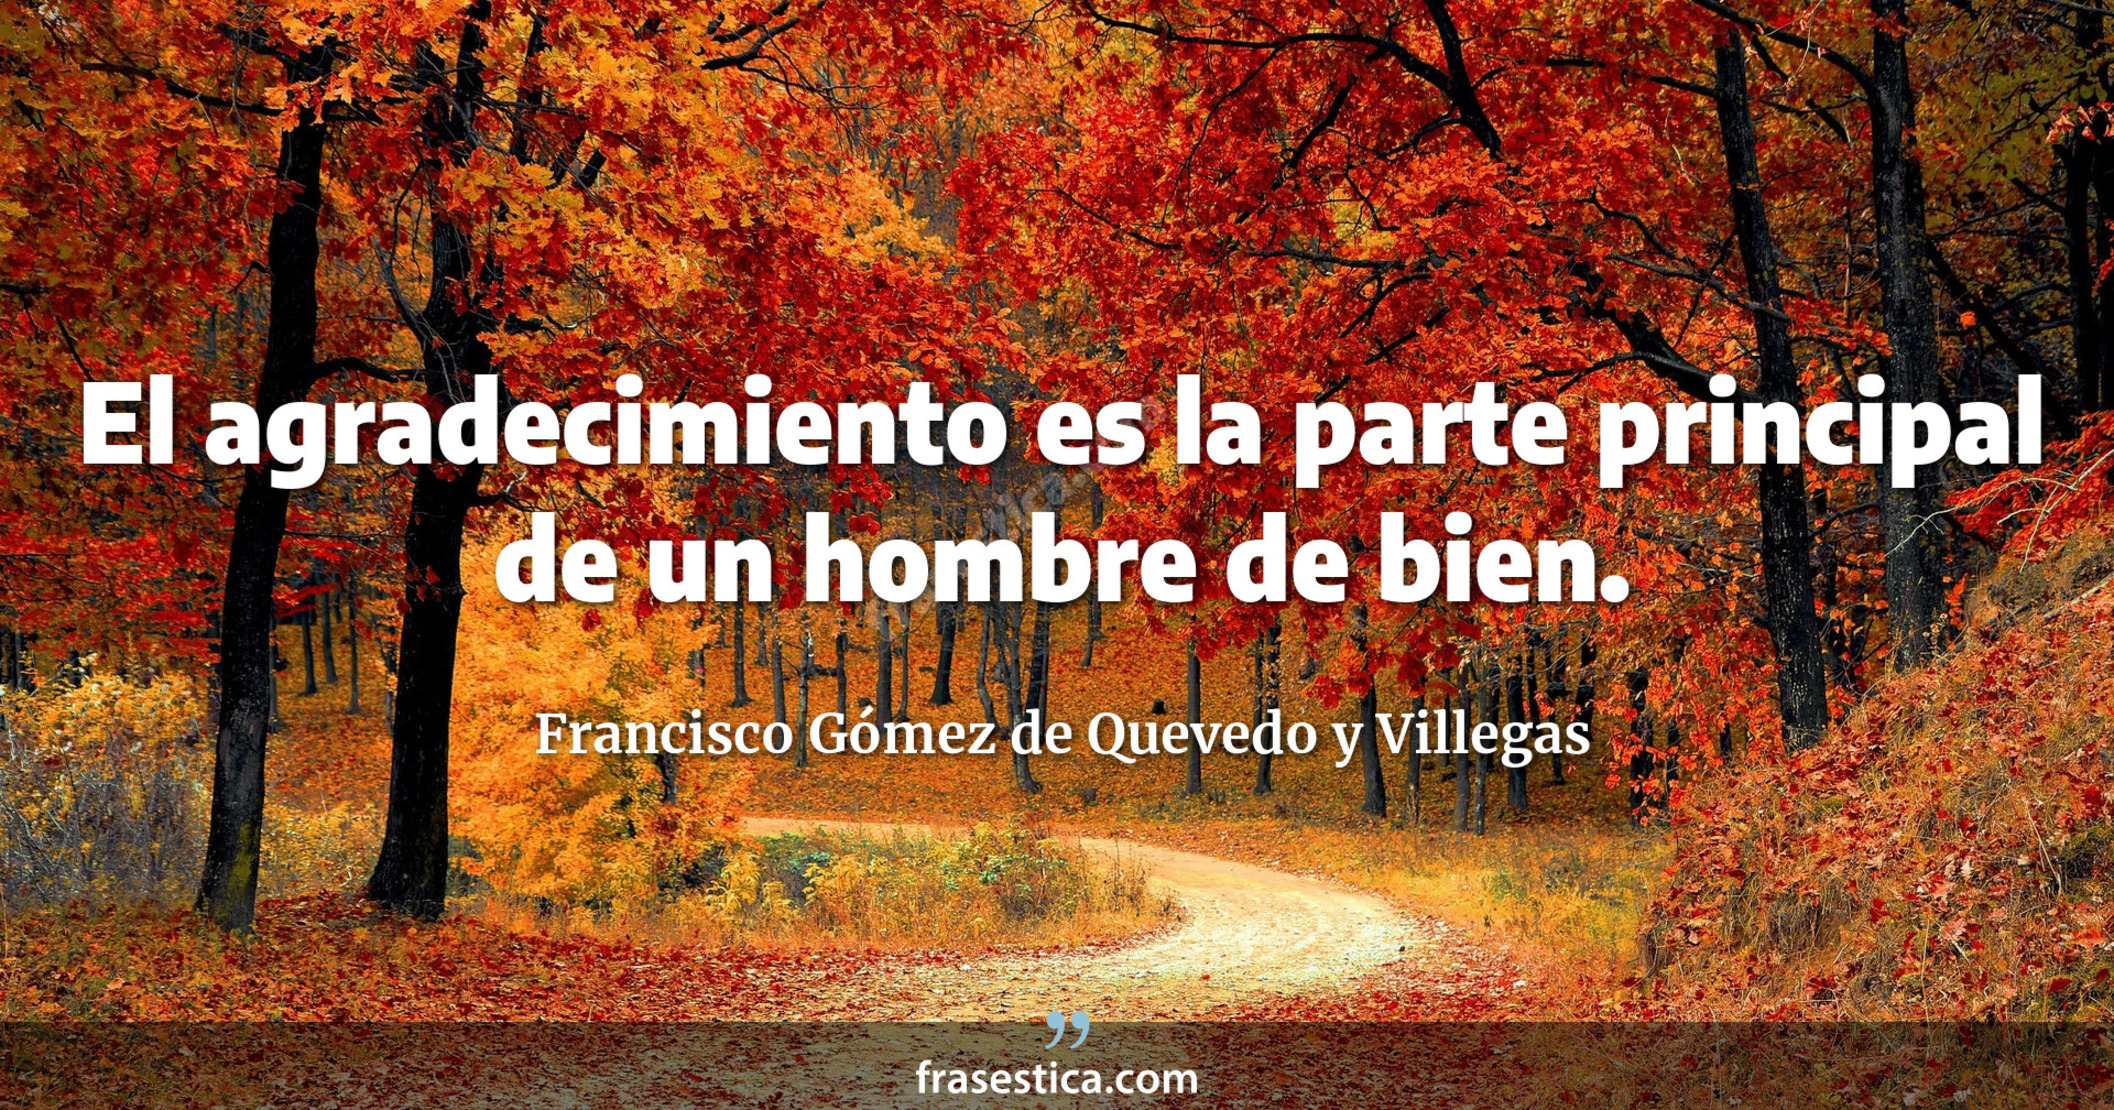 El agradecimiento es la parte principal de un hombre de bien. - Francisco Gómez de Quevedo y Villegas